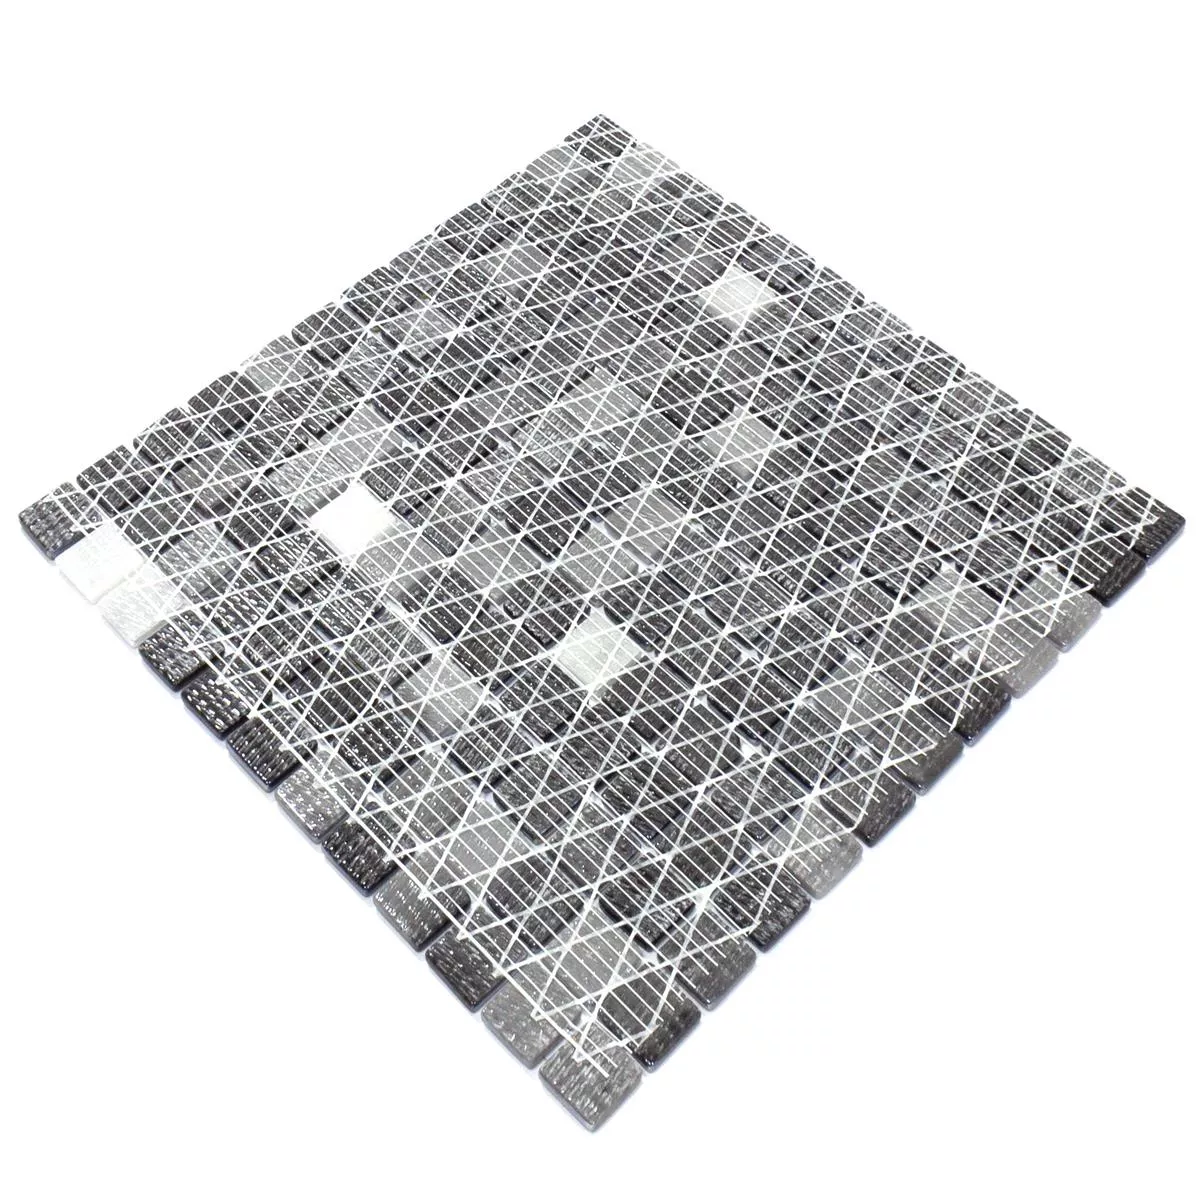 Campione Mosaico Di Vetro Piastrelle Silvertown Antracite Metallic 25x25mm